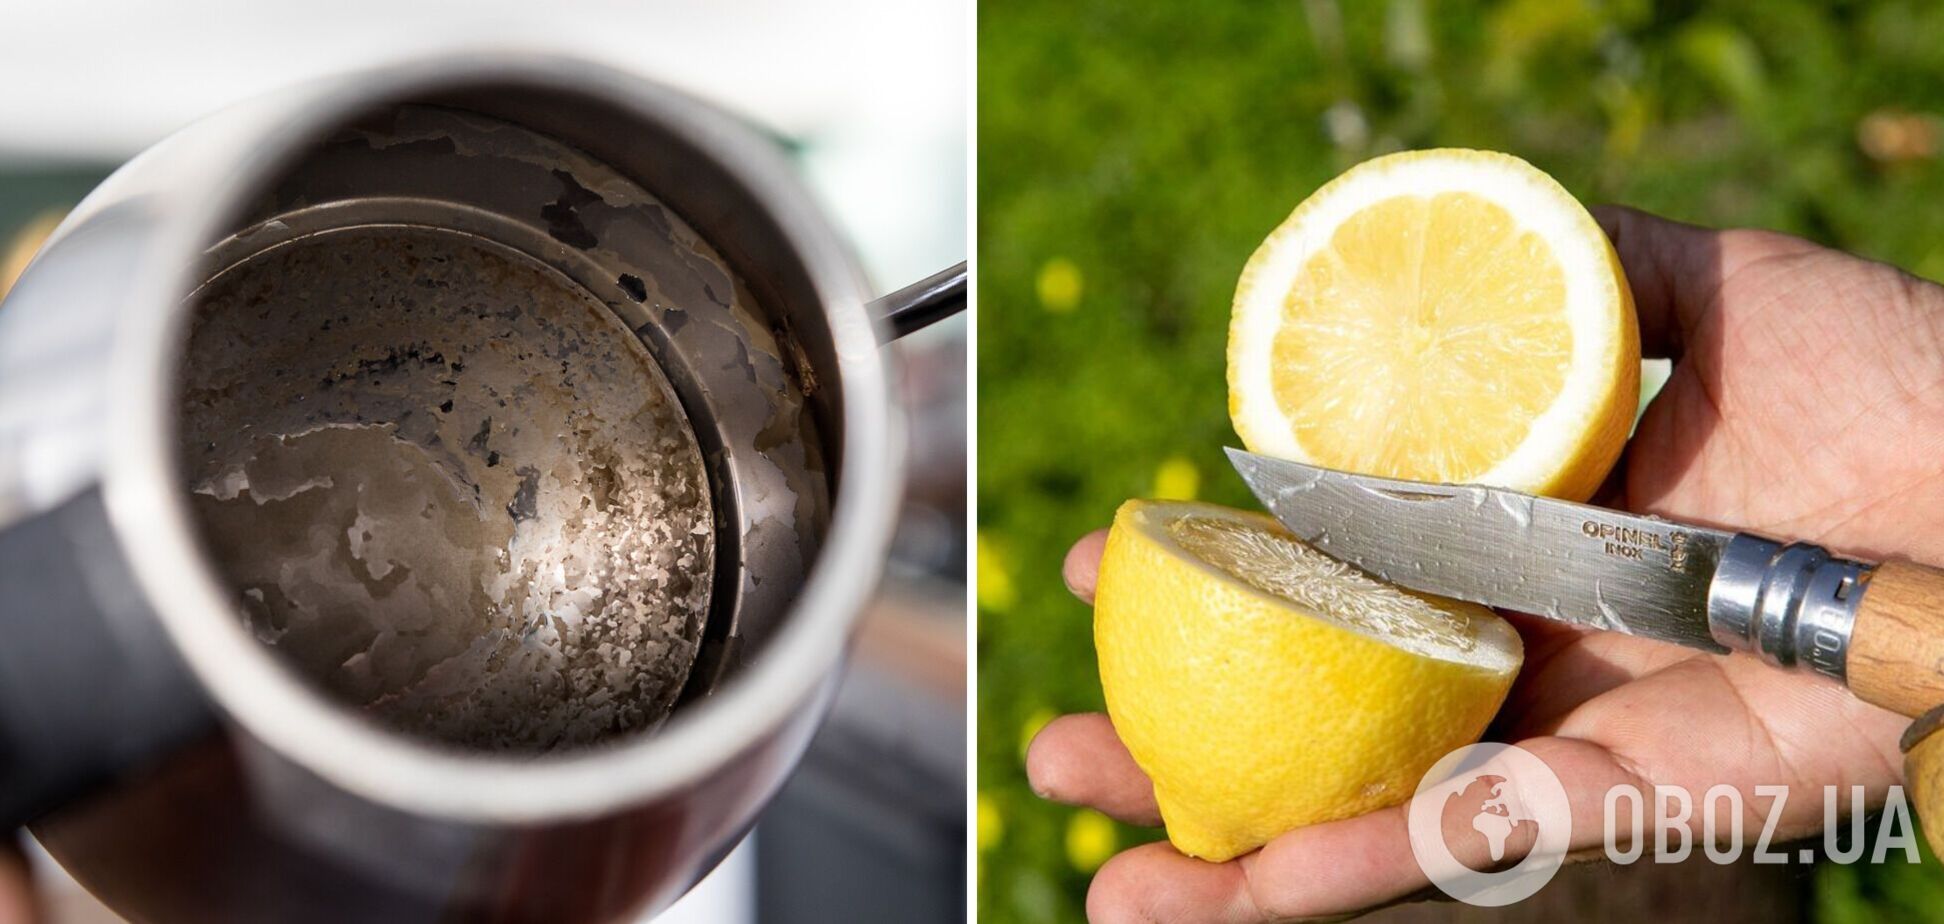 Працює на 100%: геніальний дешевий спосіб відчистити чайник від накипу